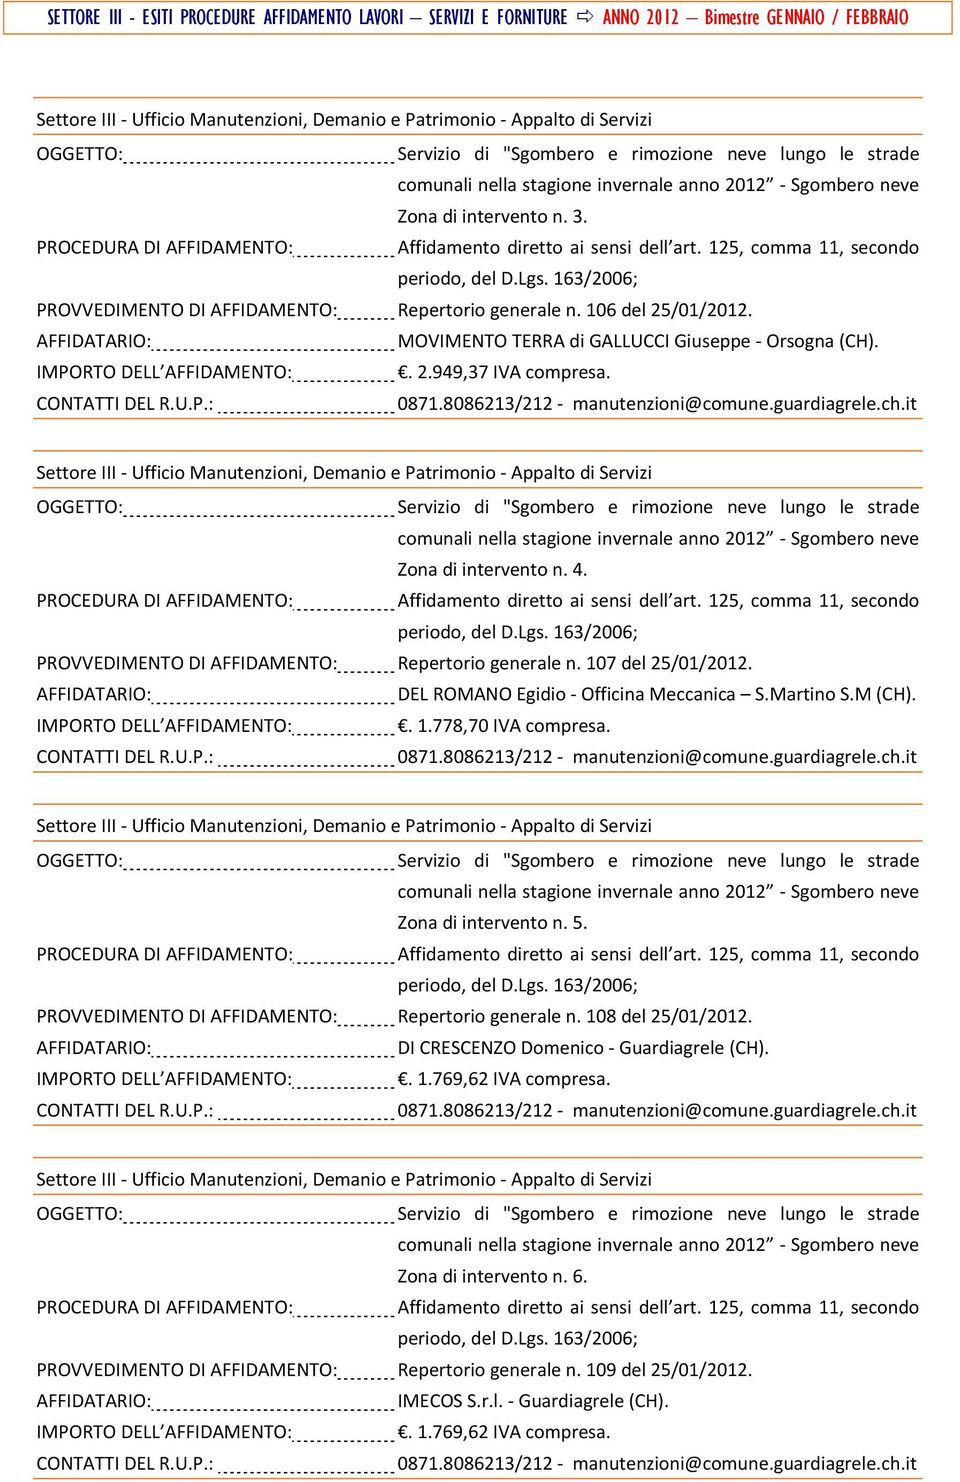 Zona di intervento n. 5. PROVVEDIMENTO DI AFFIDAMENTO: Repertorio generale n. 108 del 25/01/2012. DI CRESCENZO Domenico Guardiagrele (CH).. 1.769,62 IVA compresa.